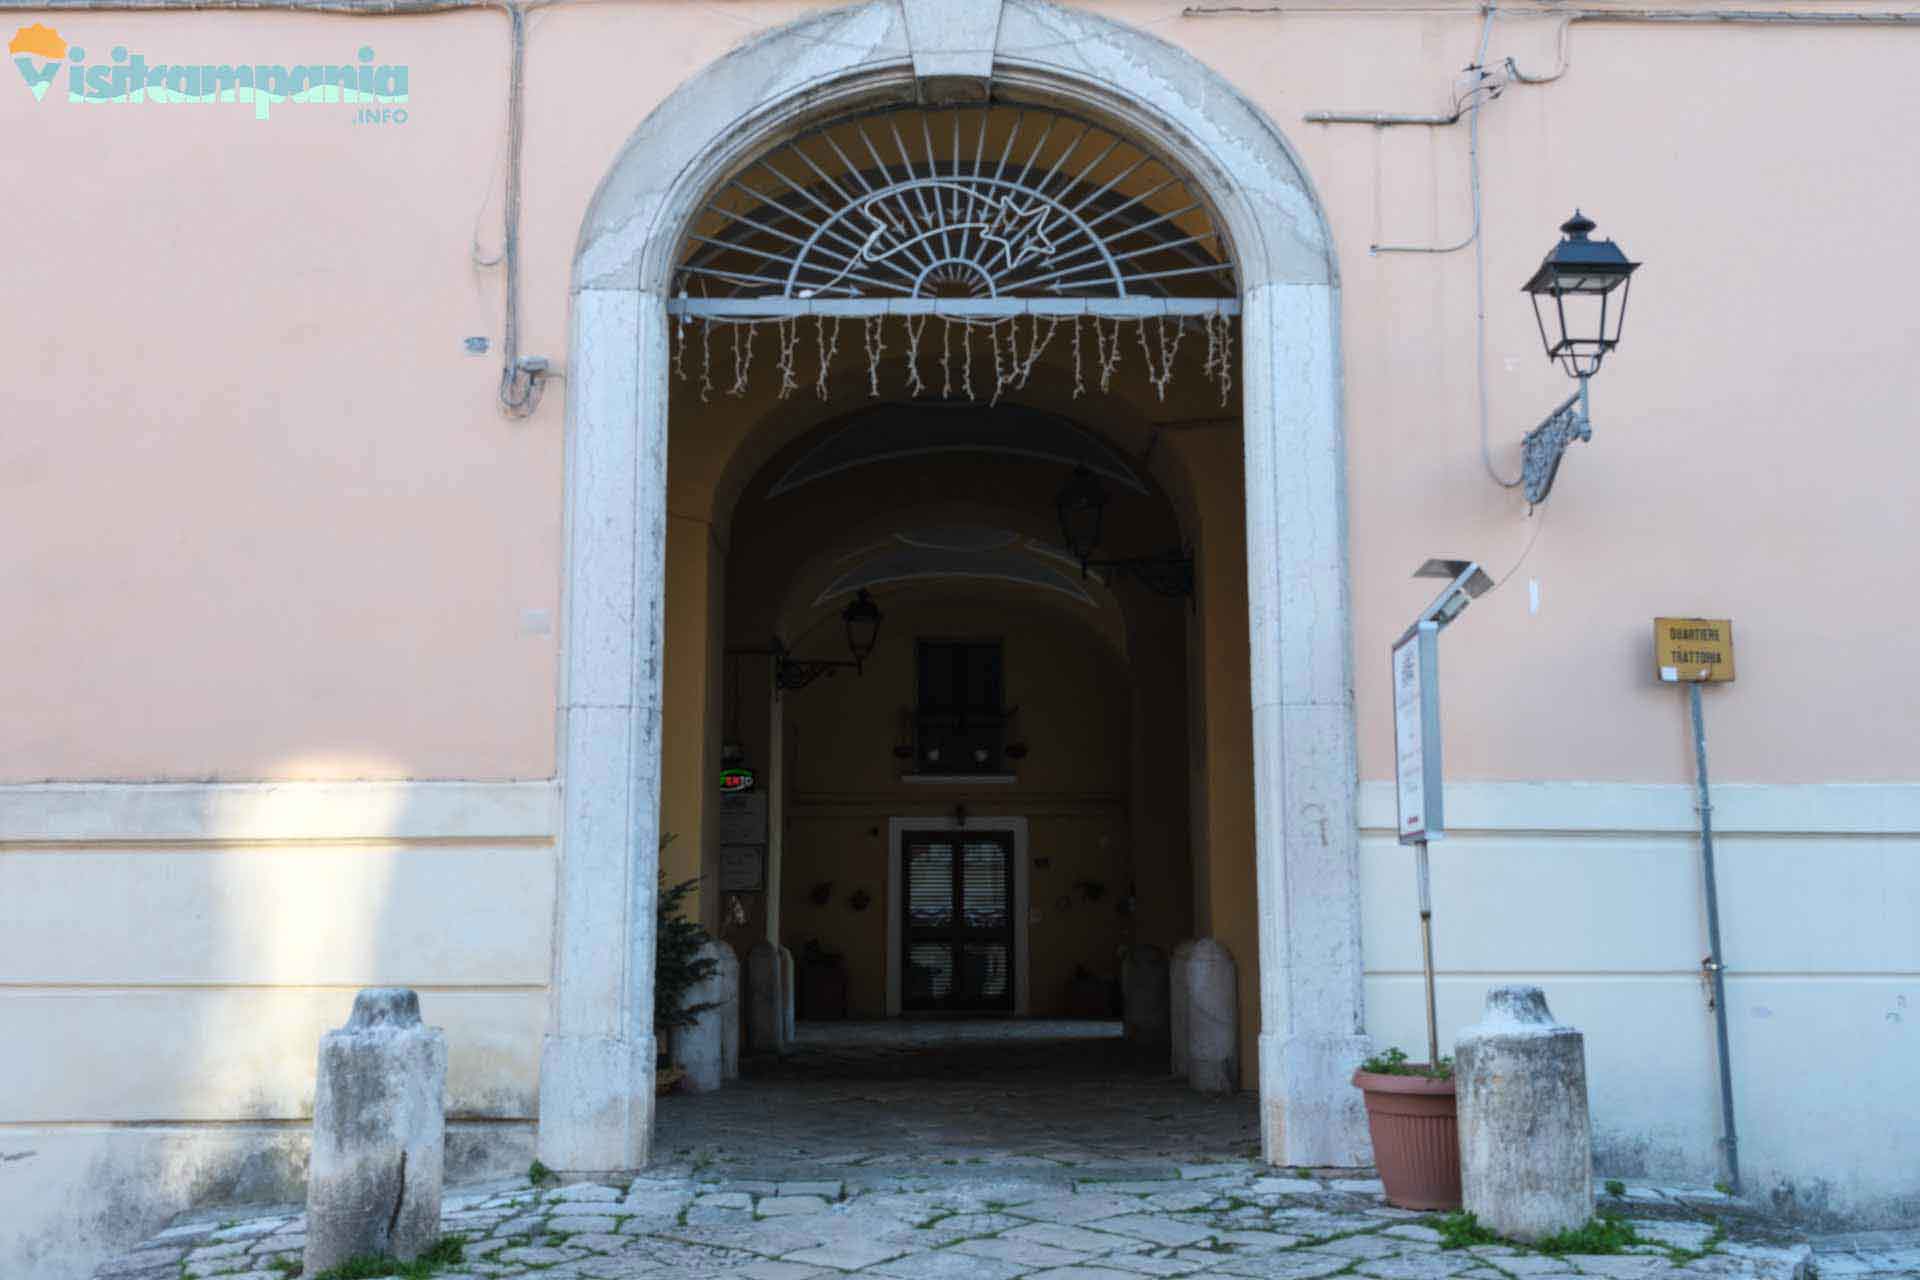 San Leucio und Vaccheria, Eingang zum Trattoria-Viertel